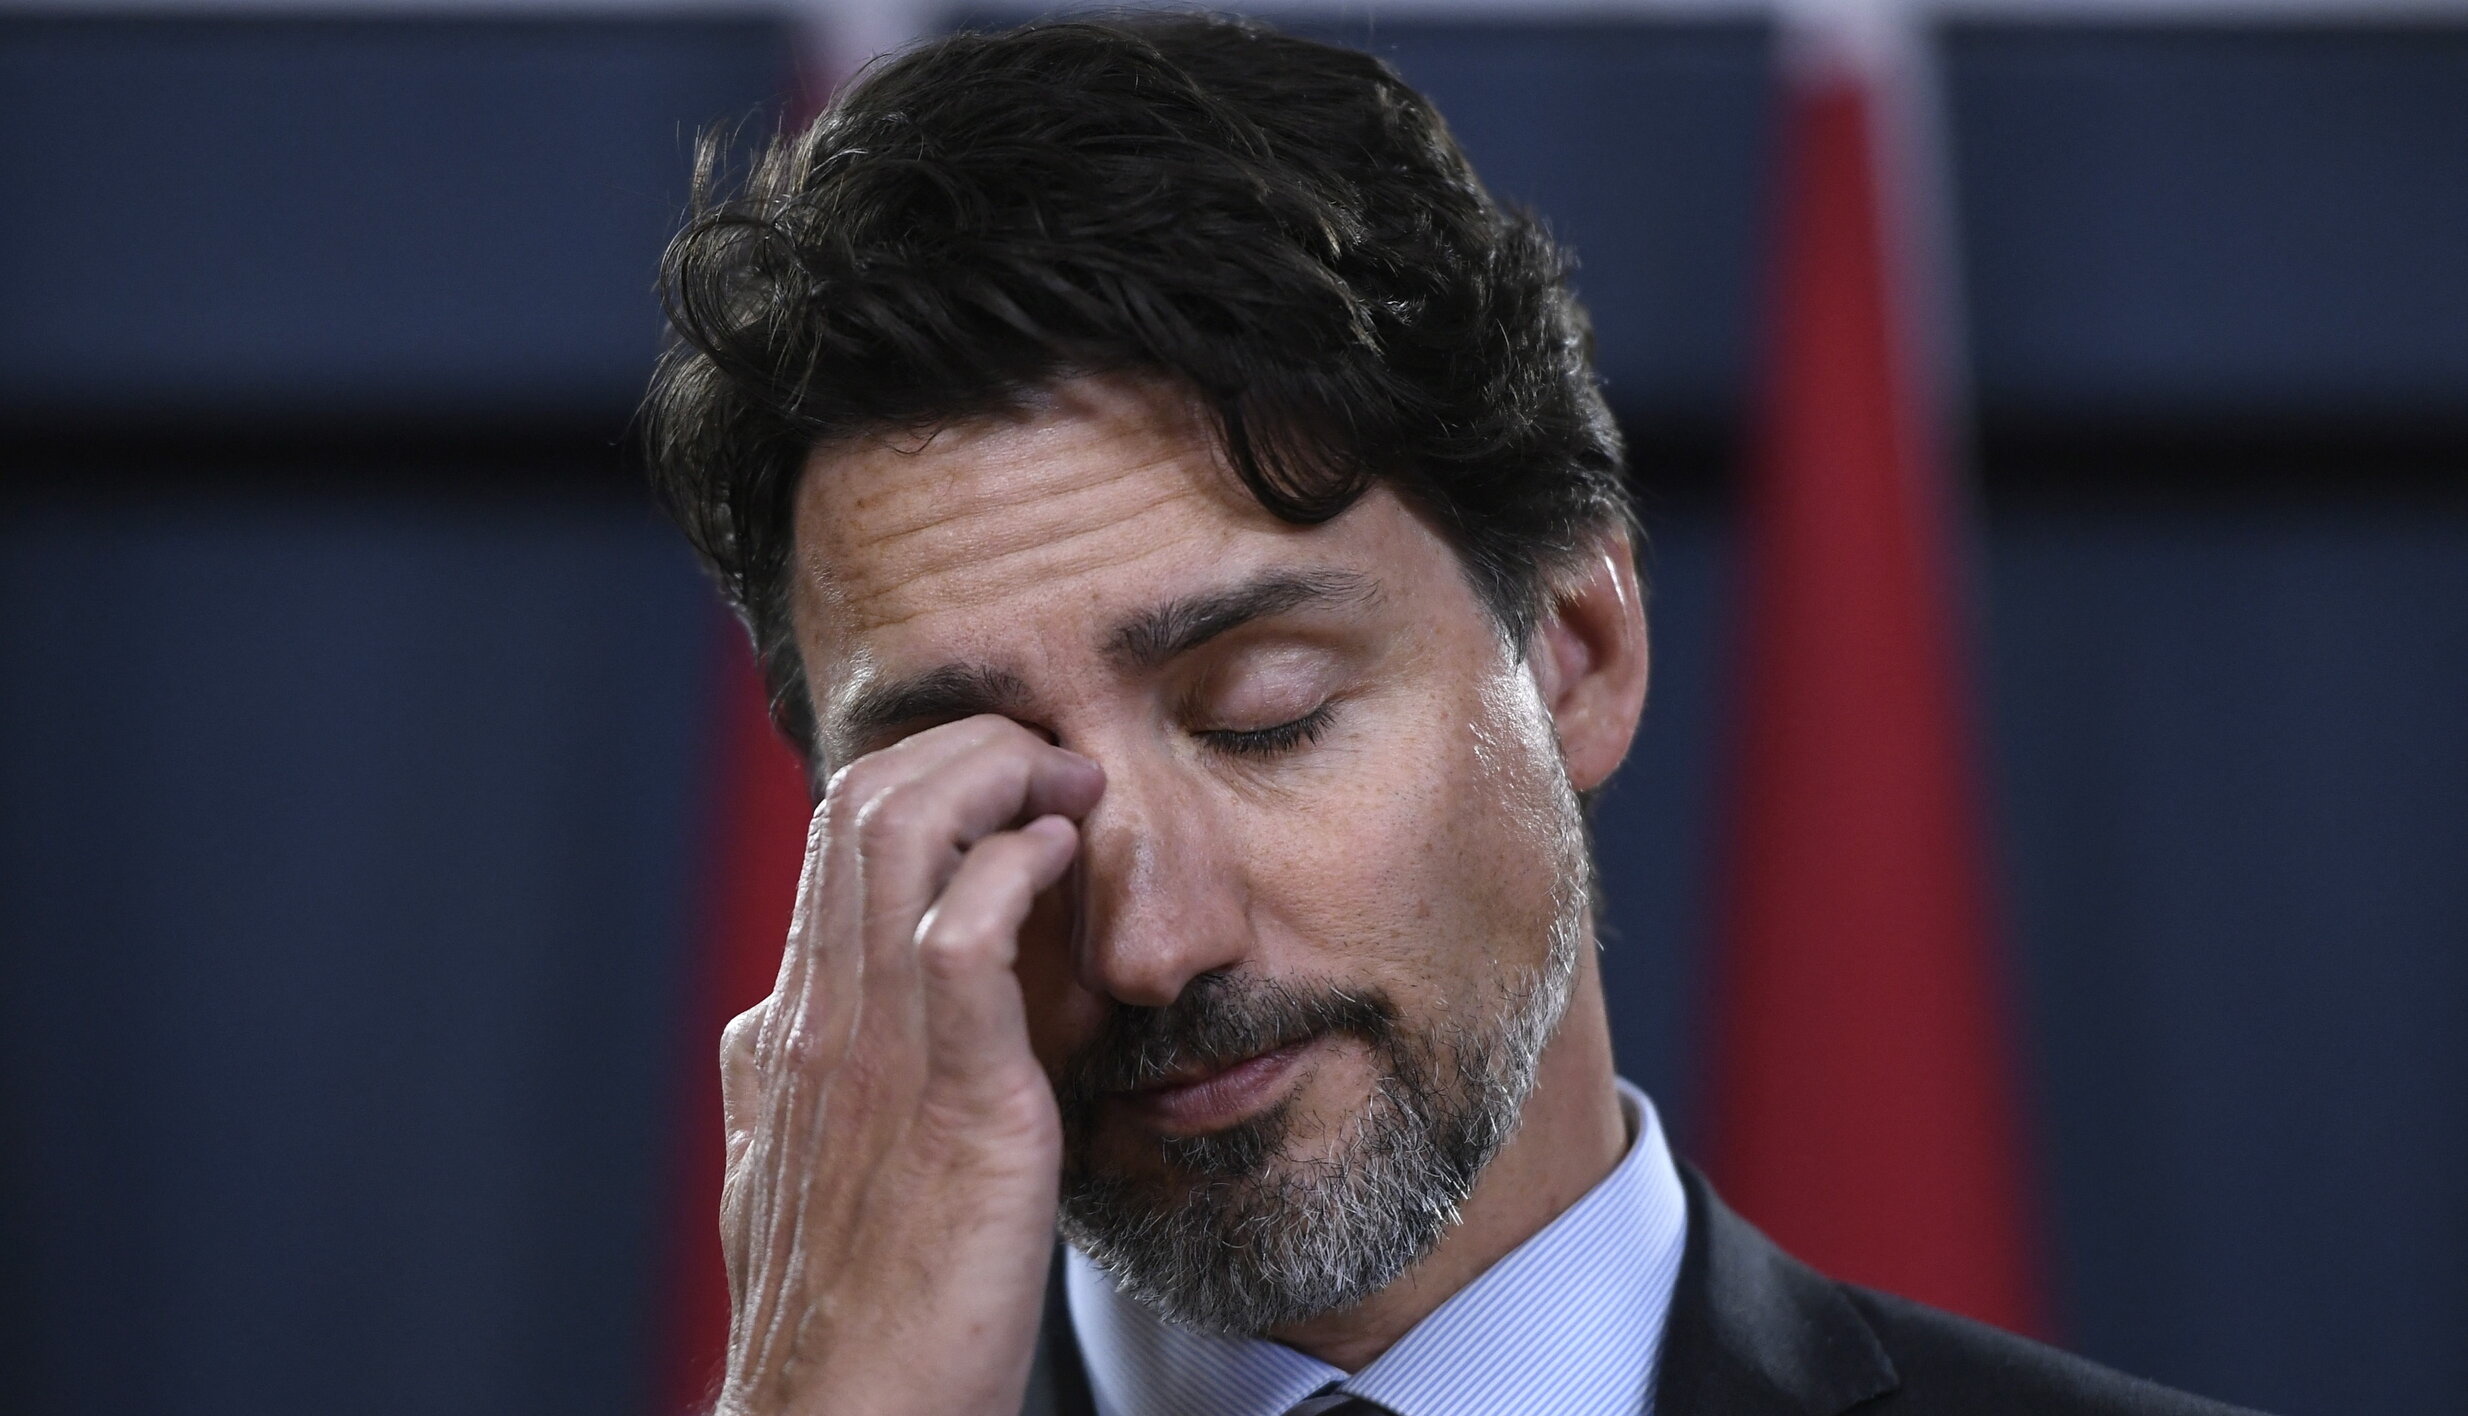 VIDEO| Premierul canadian Justin Trudeau a fost atacat cu pietre în timpul unui miting electoral